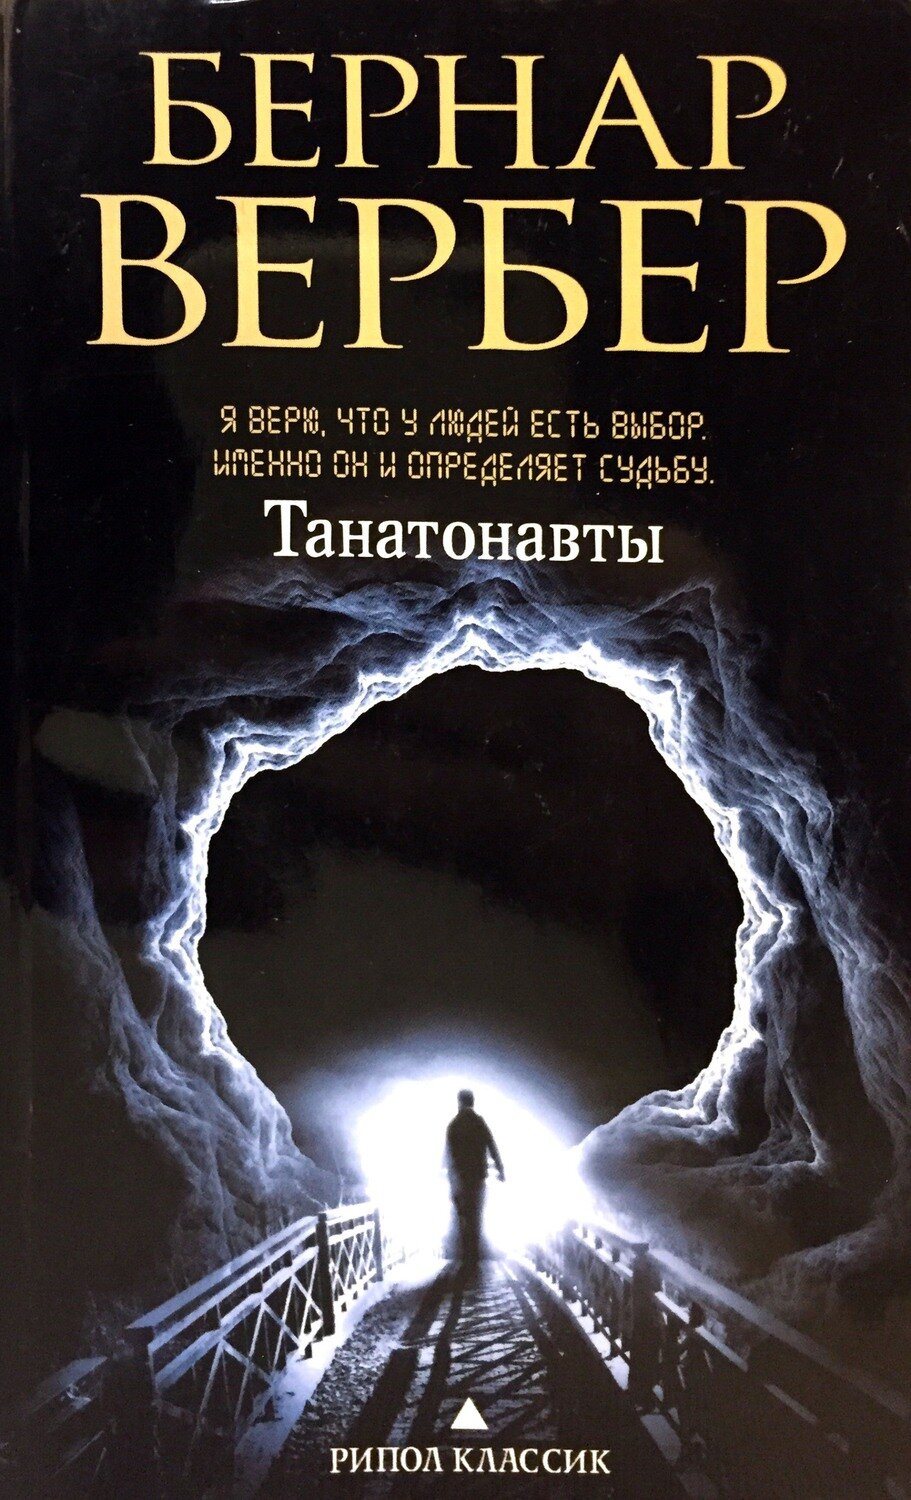 Бернар Вербер, Танатонавты (1994)